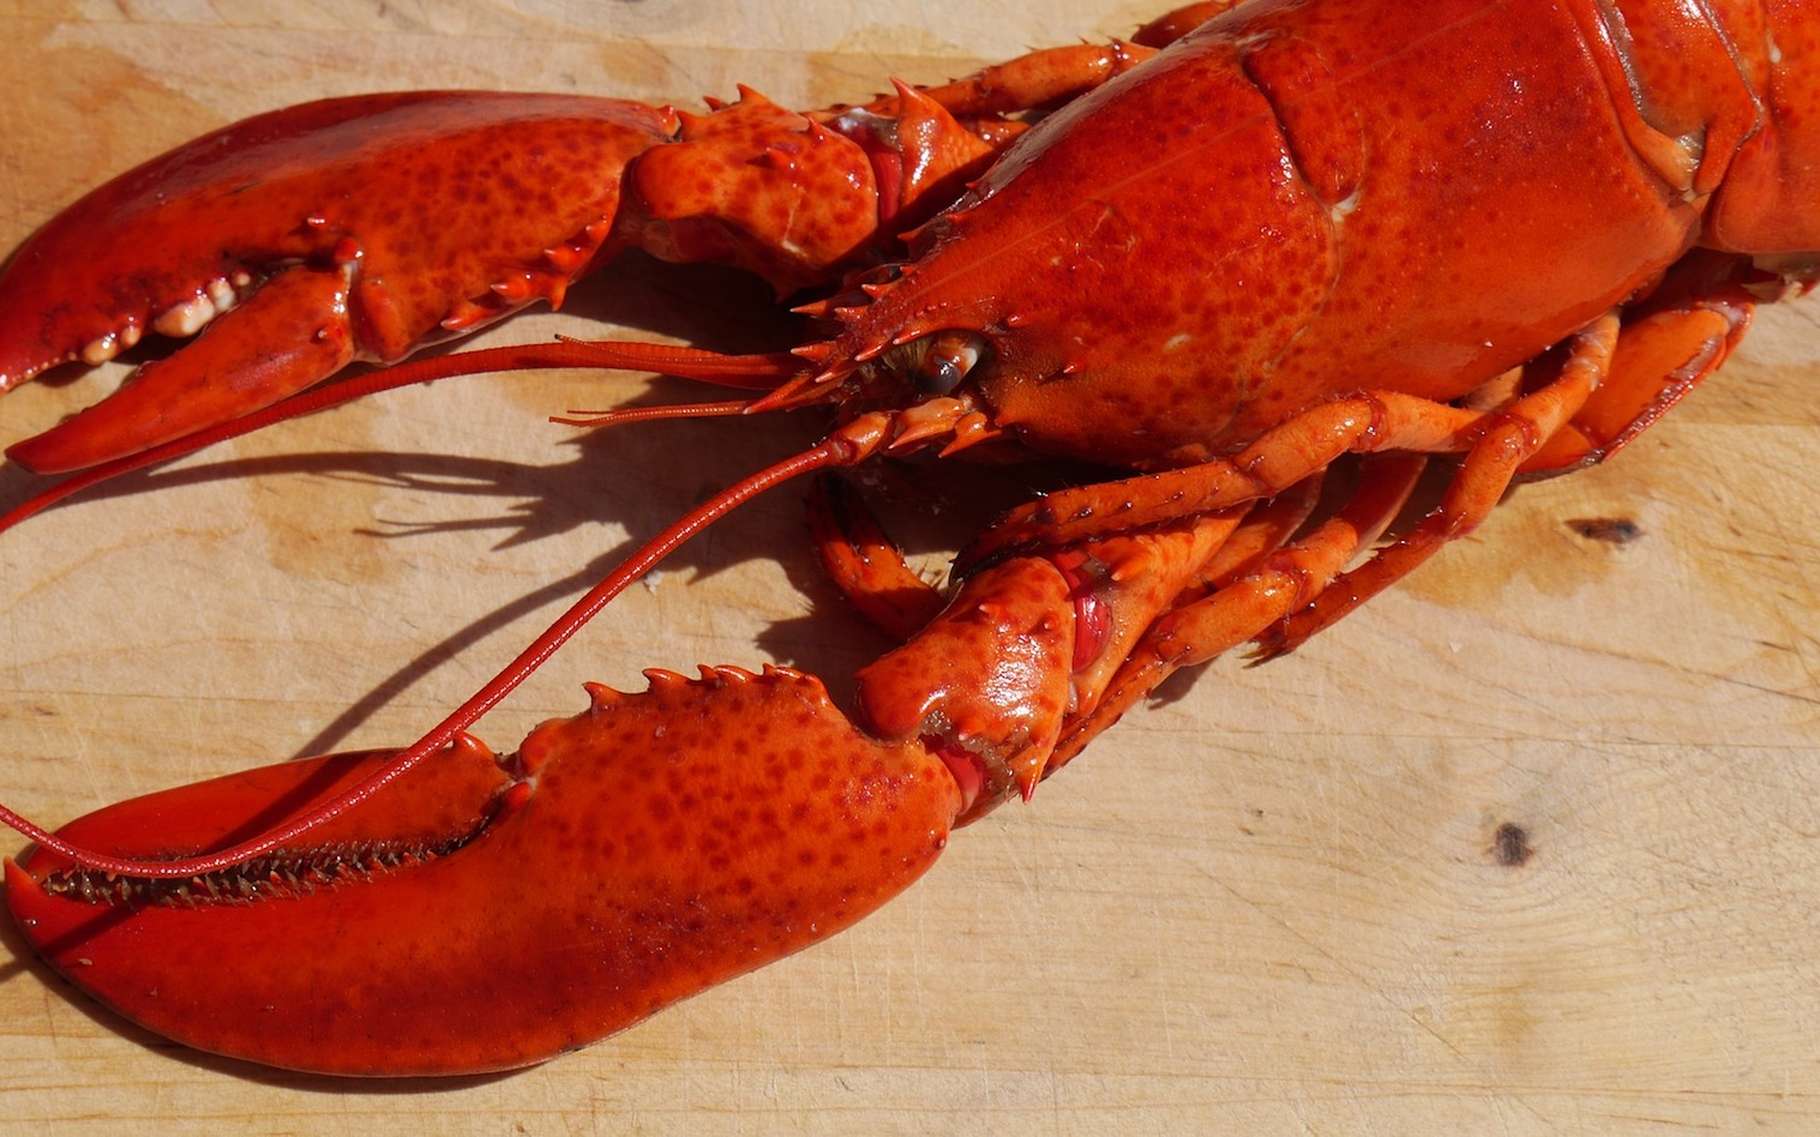 Le homard se différencie de la langouste, notamment par ses pinces épaisses et sa carapace lisse. © ndermello, Pixabay, CC0 Public Domain